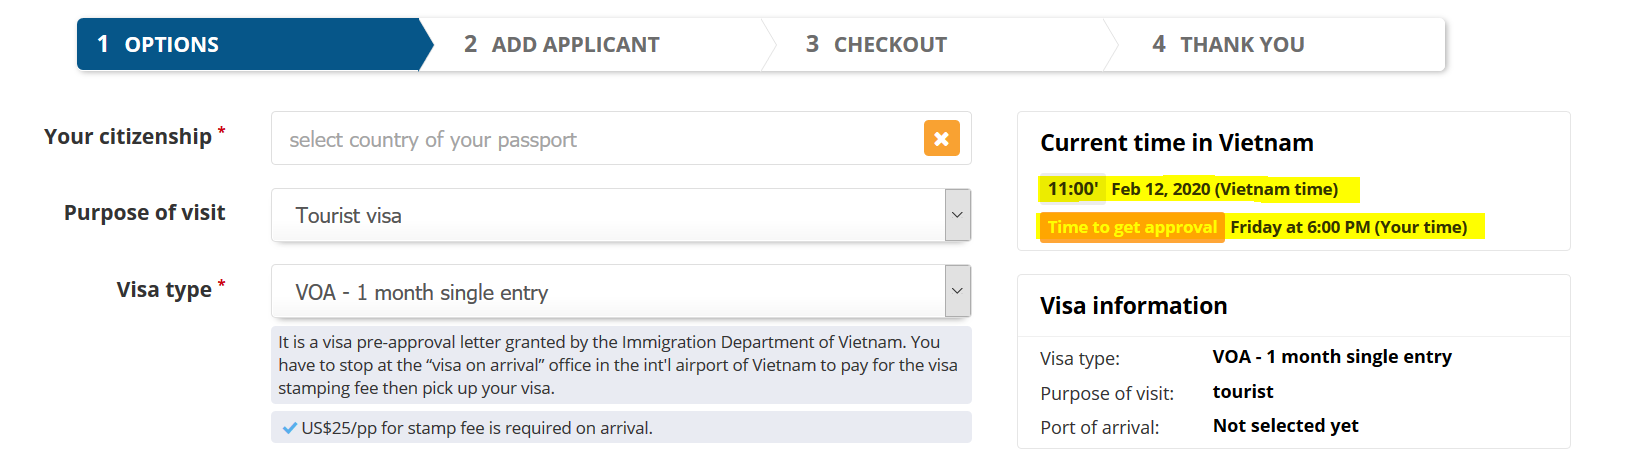 تأشيرة فيتنام السريعة عملية عاجلة للحصول على فيزا فيتنام خلال ساعتين في مصر ارتباط فيتنام 2086